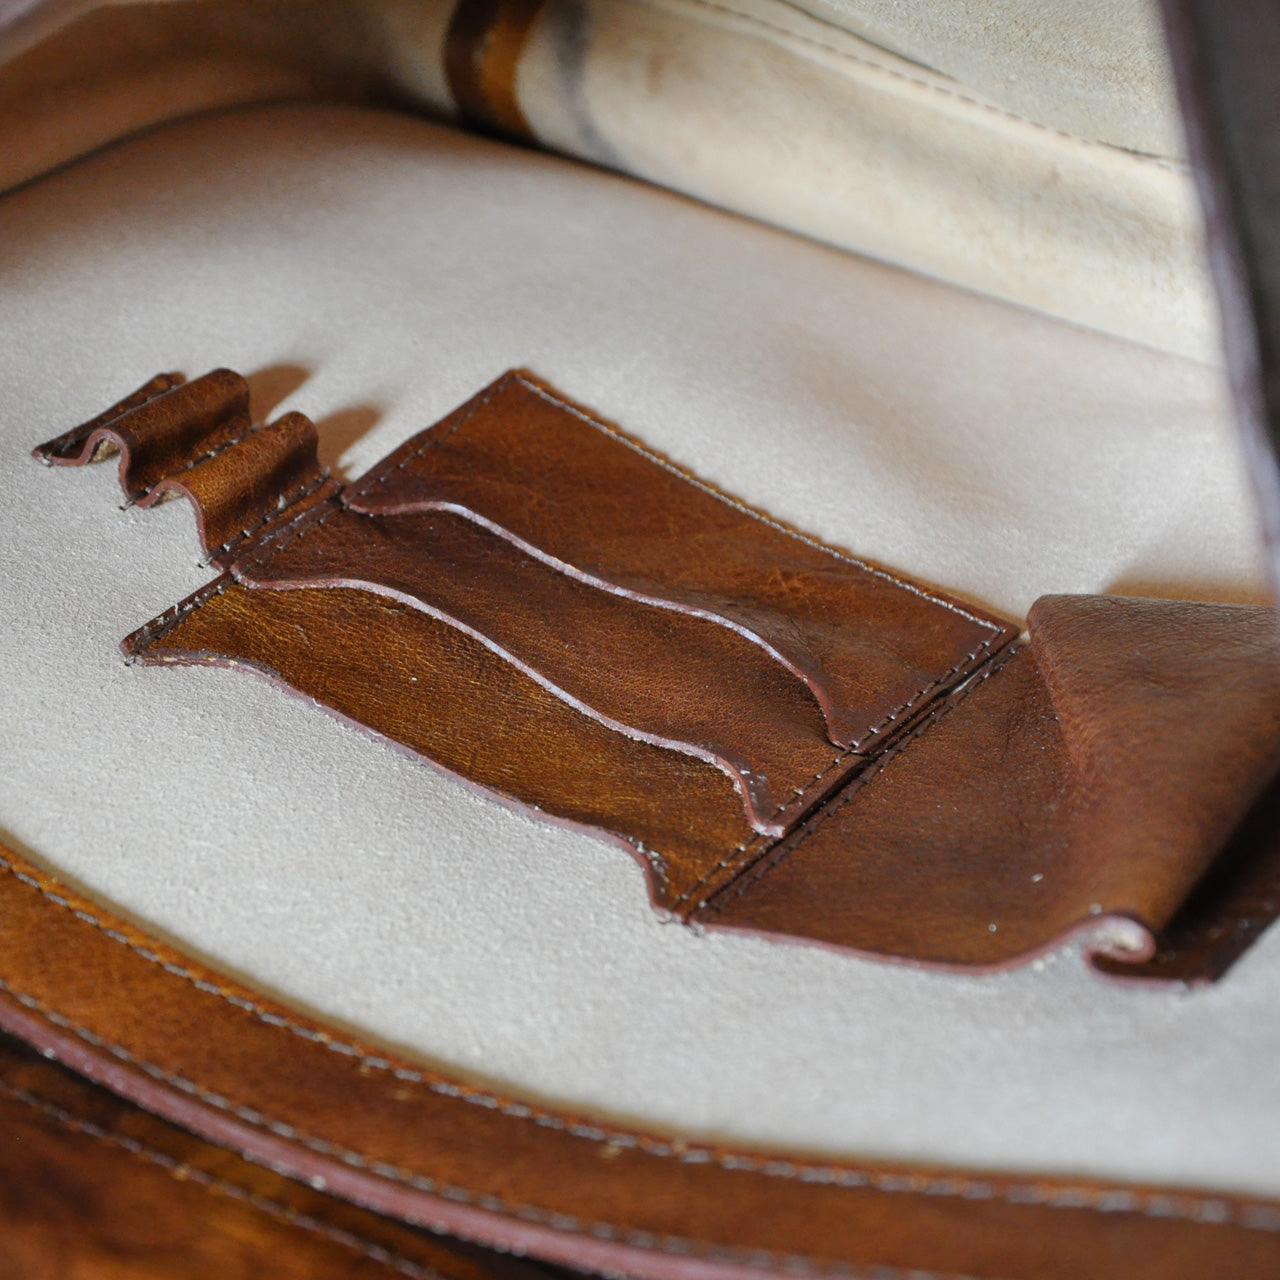 Pratesi Val D'Orcia Cross Body Bag in genuine Italian leather